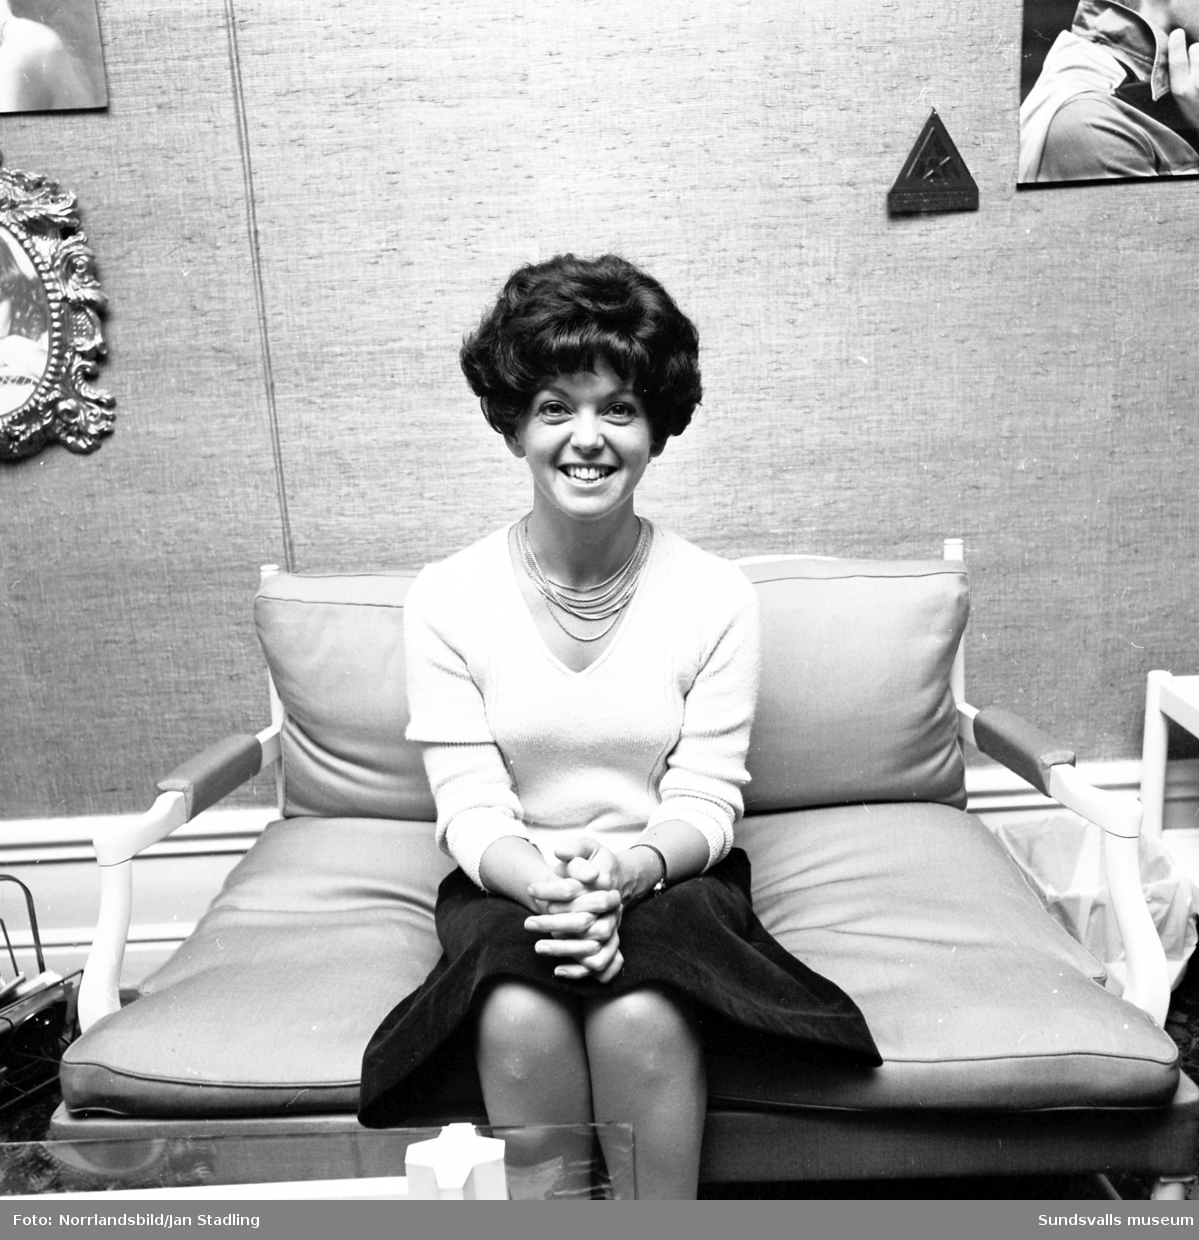 Borgs damfrisering i Timrå. Foton på en kvinna i olika peruker tagna för Timrå Tidning - ett informationsblad som utkom 1972-1982.